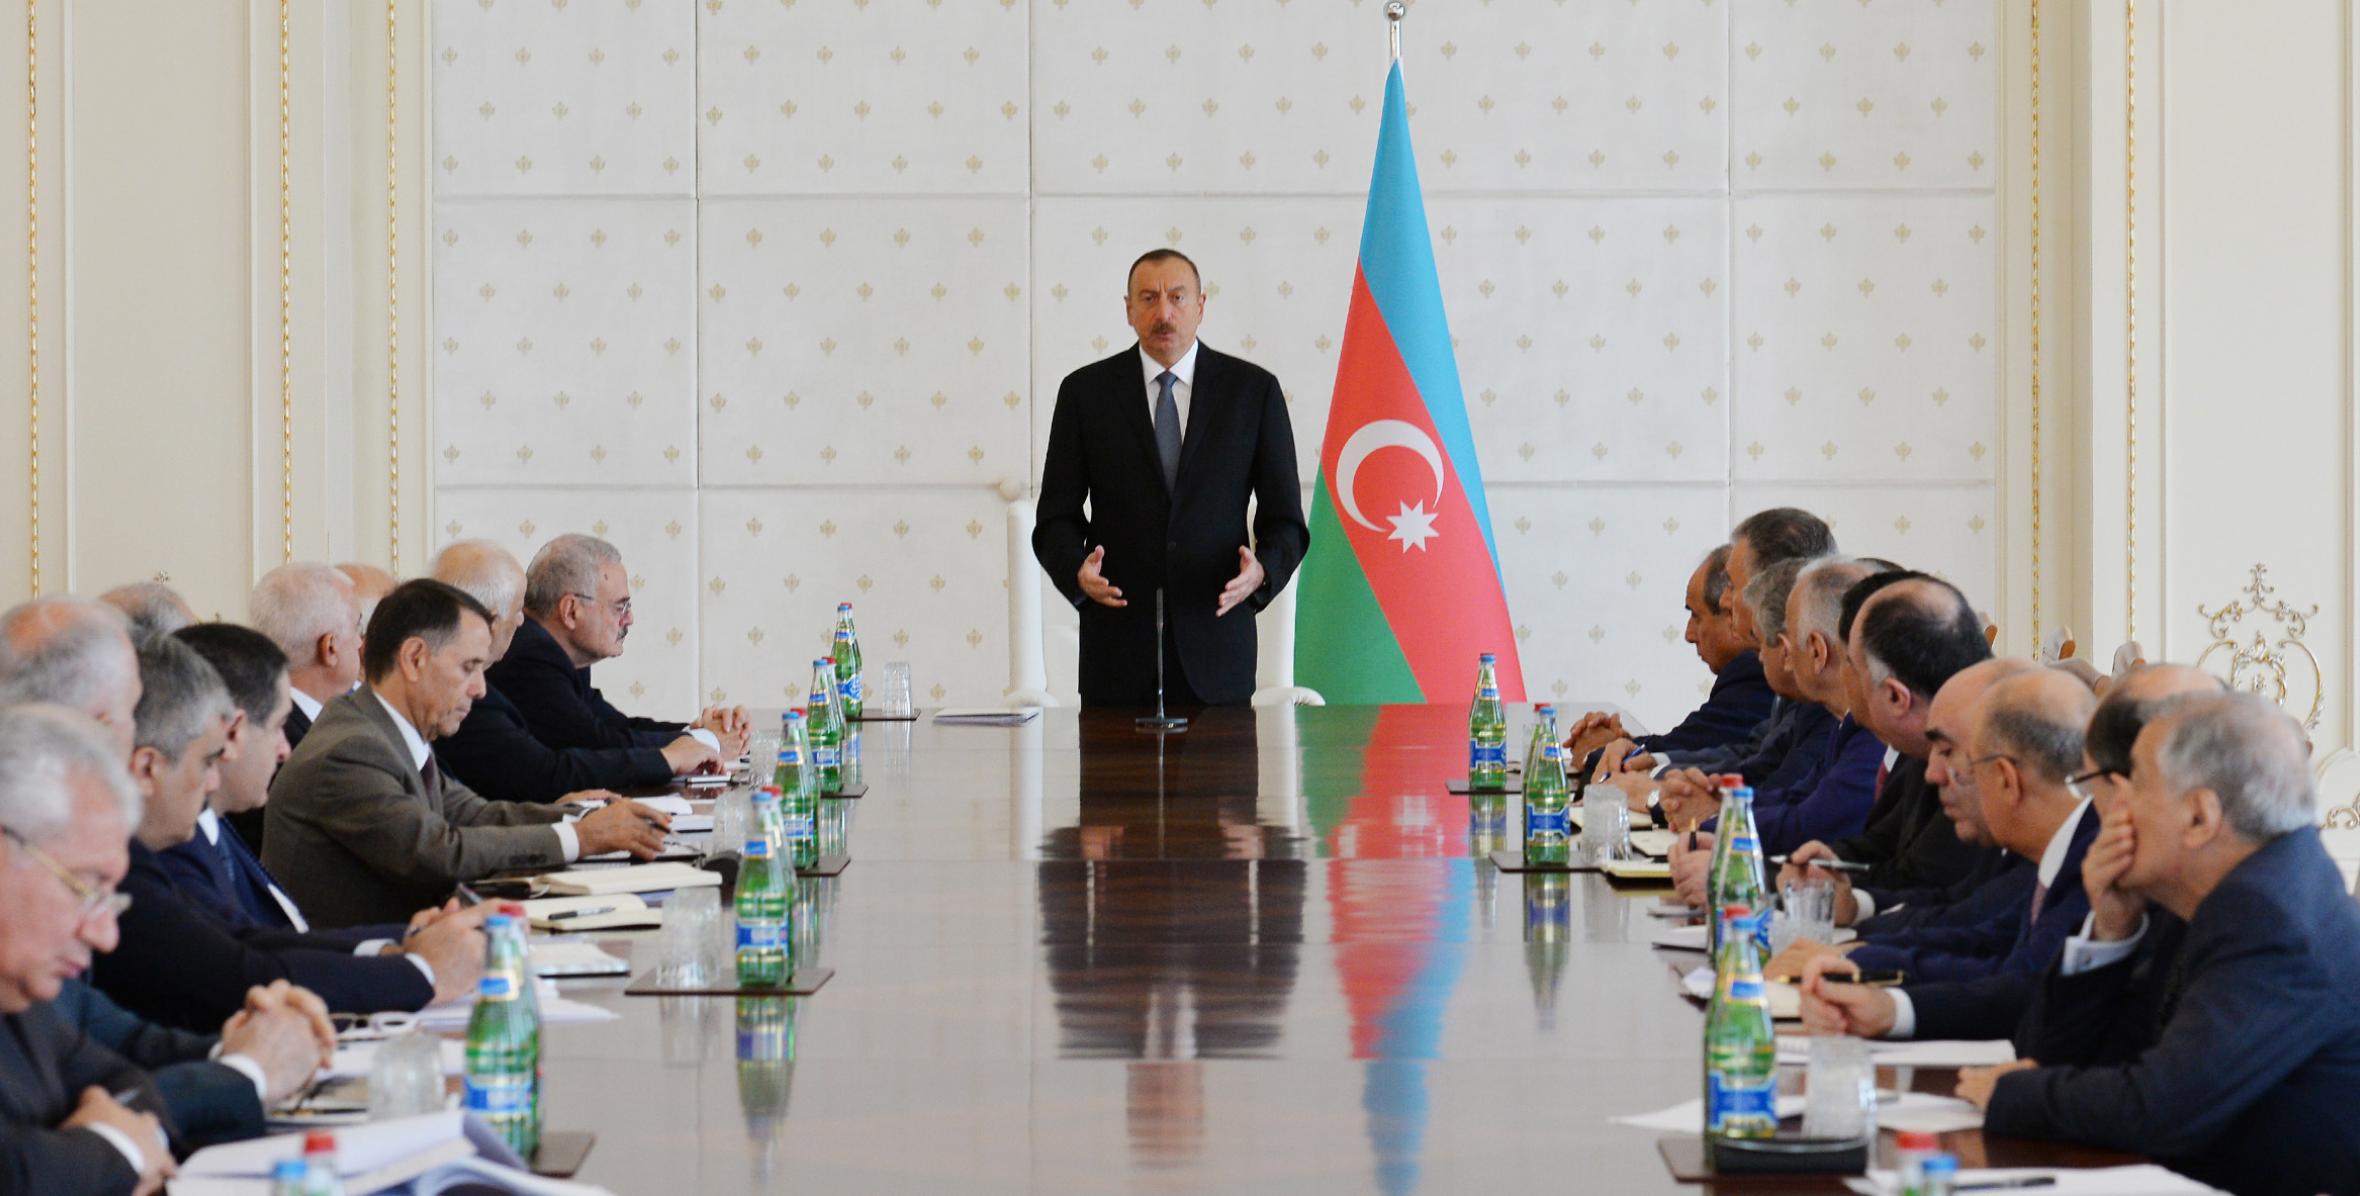 Вступительная речь Ильхама Алиева на заседании Кабинета Министров, посвященное итогам социально-экономического развития в первой половине 2016 года и предстоящим задачам